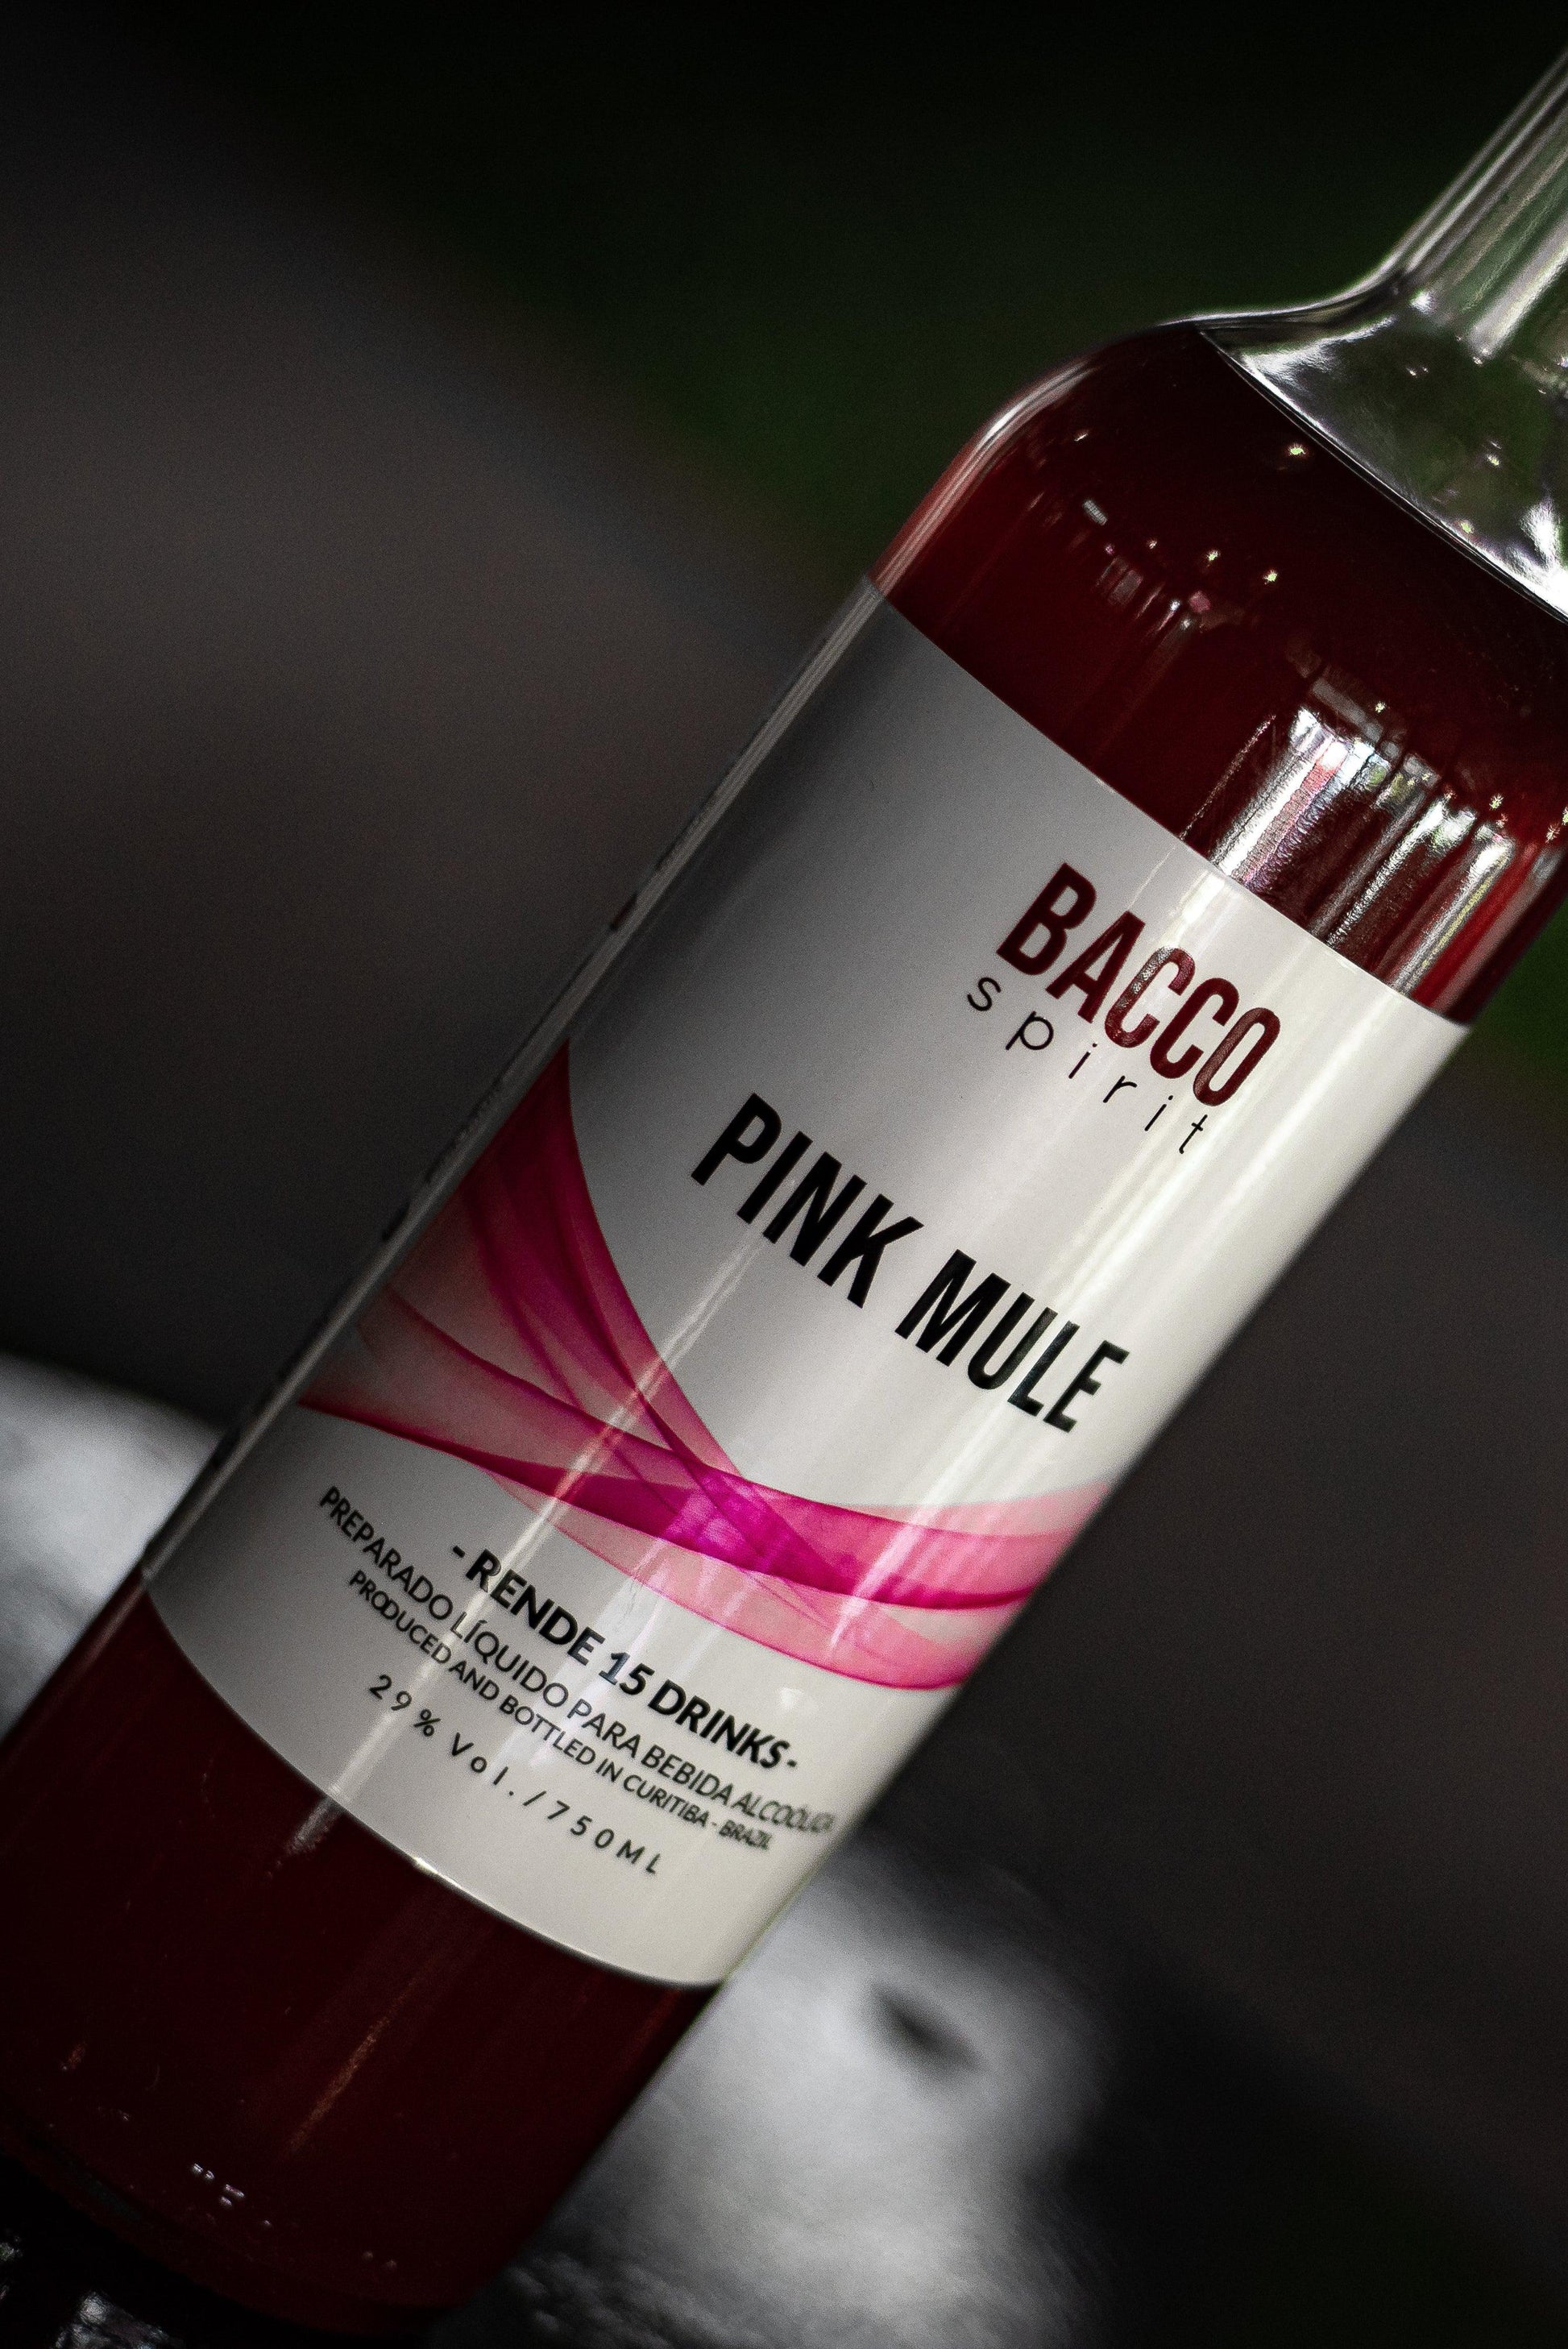 Kit Pink Mule - BACCO spirit